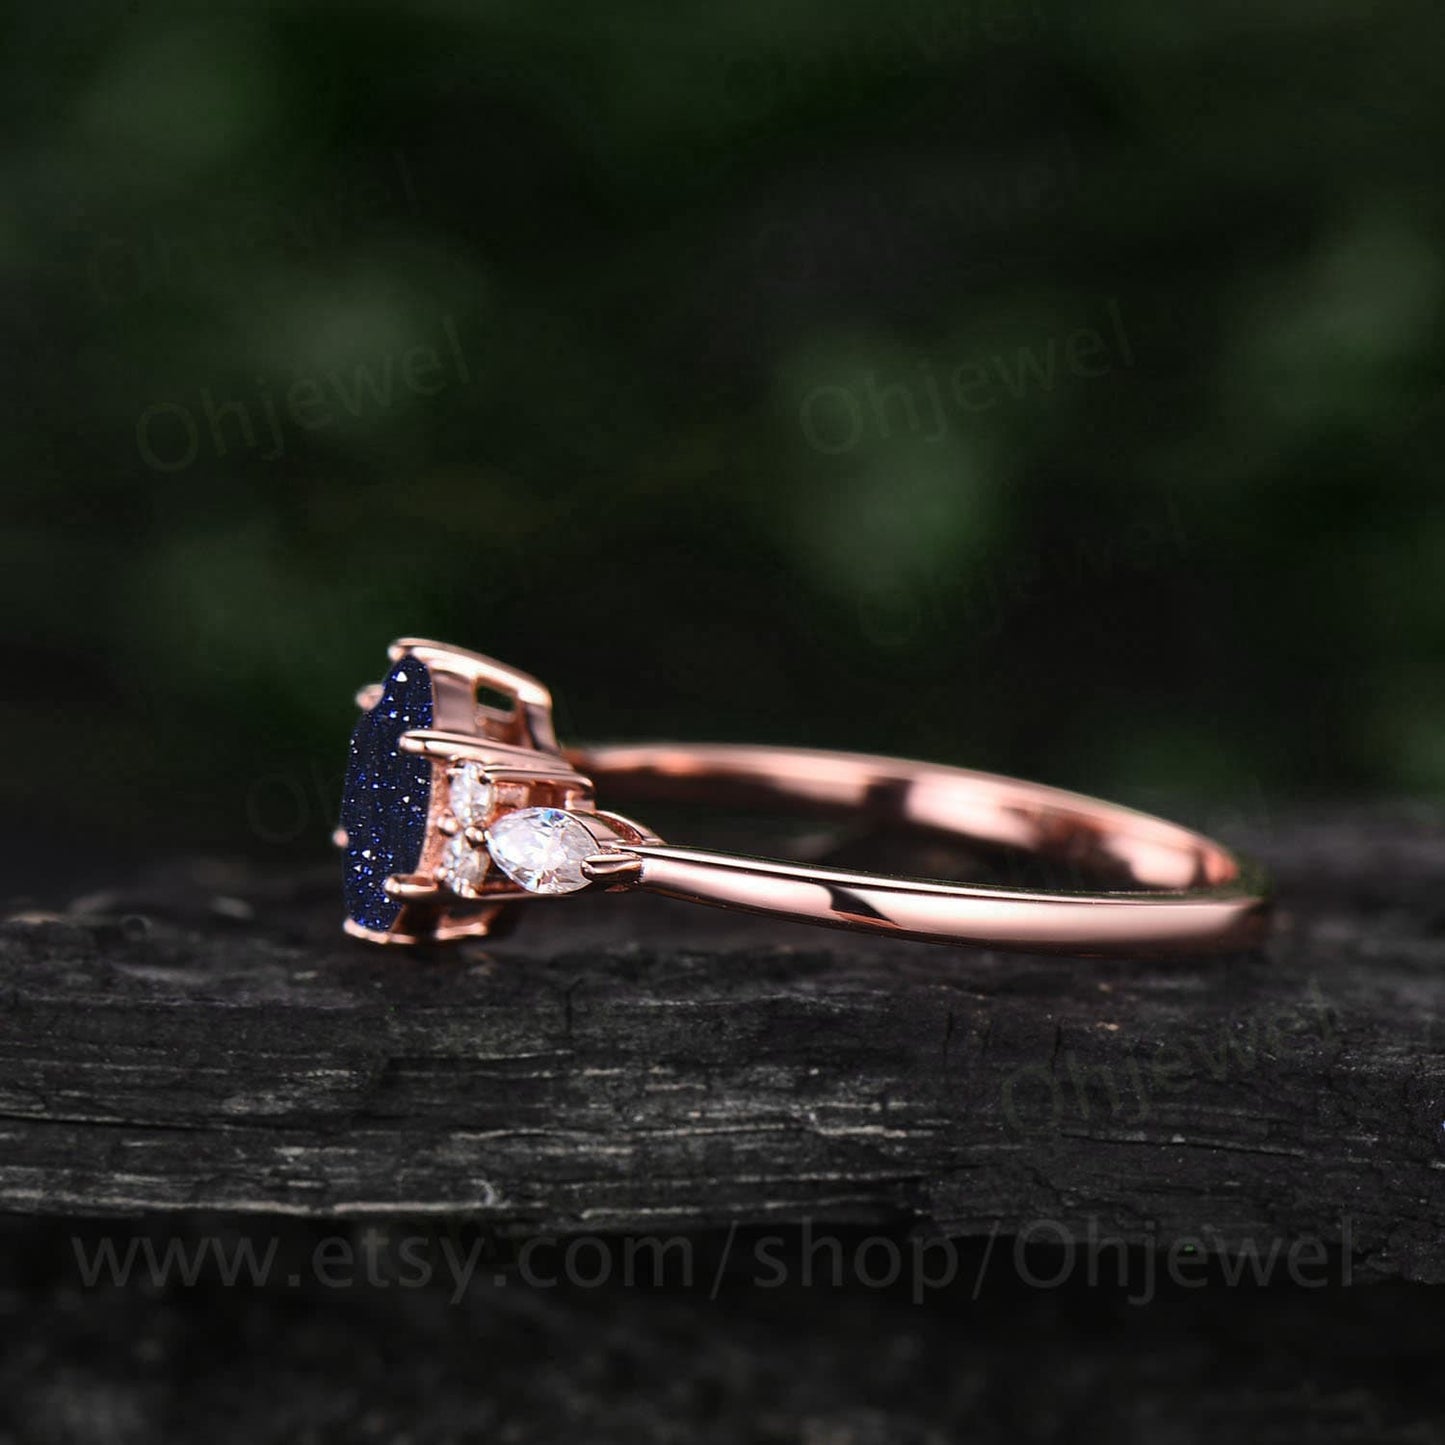 Vintage hexagon blue sandstone engagement ring art deco 14k rose gold silver 7 stone moissanite ring for women wedding anniversary ring gift